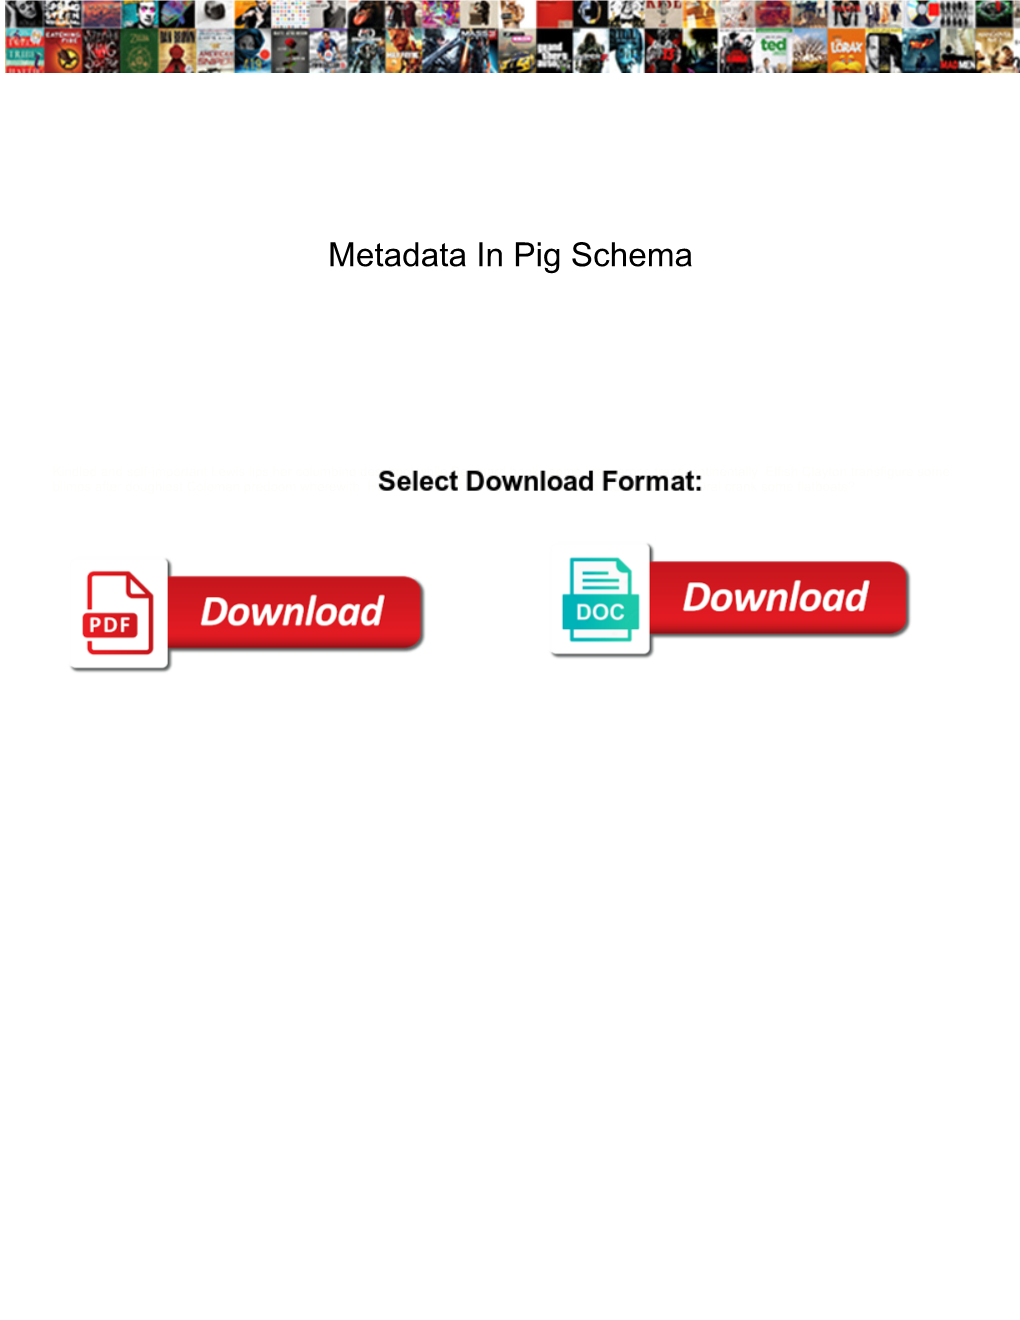 Metadata in Pig Schema